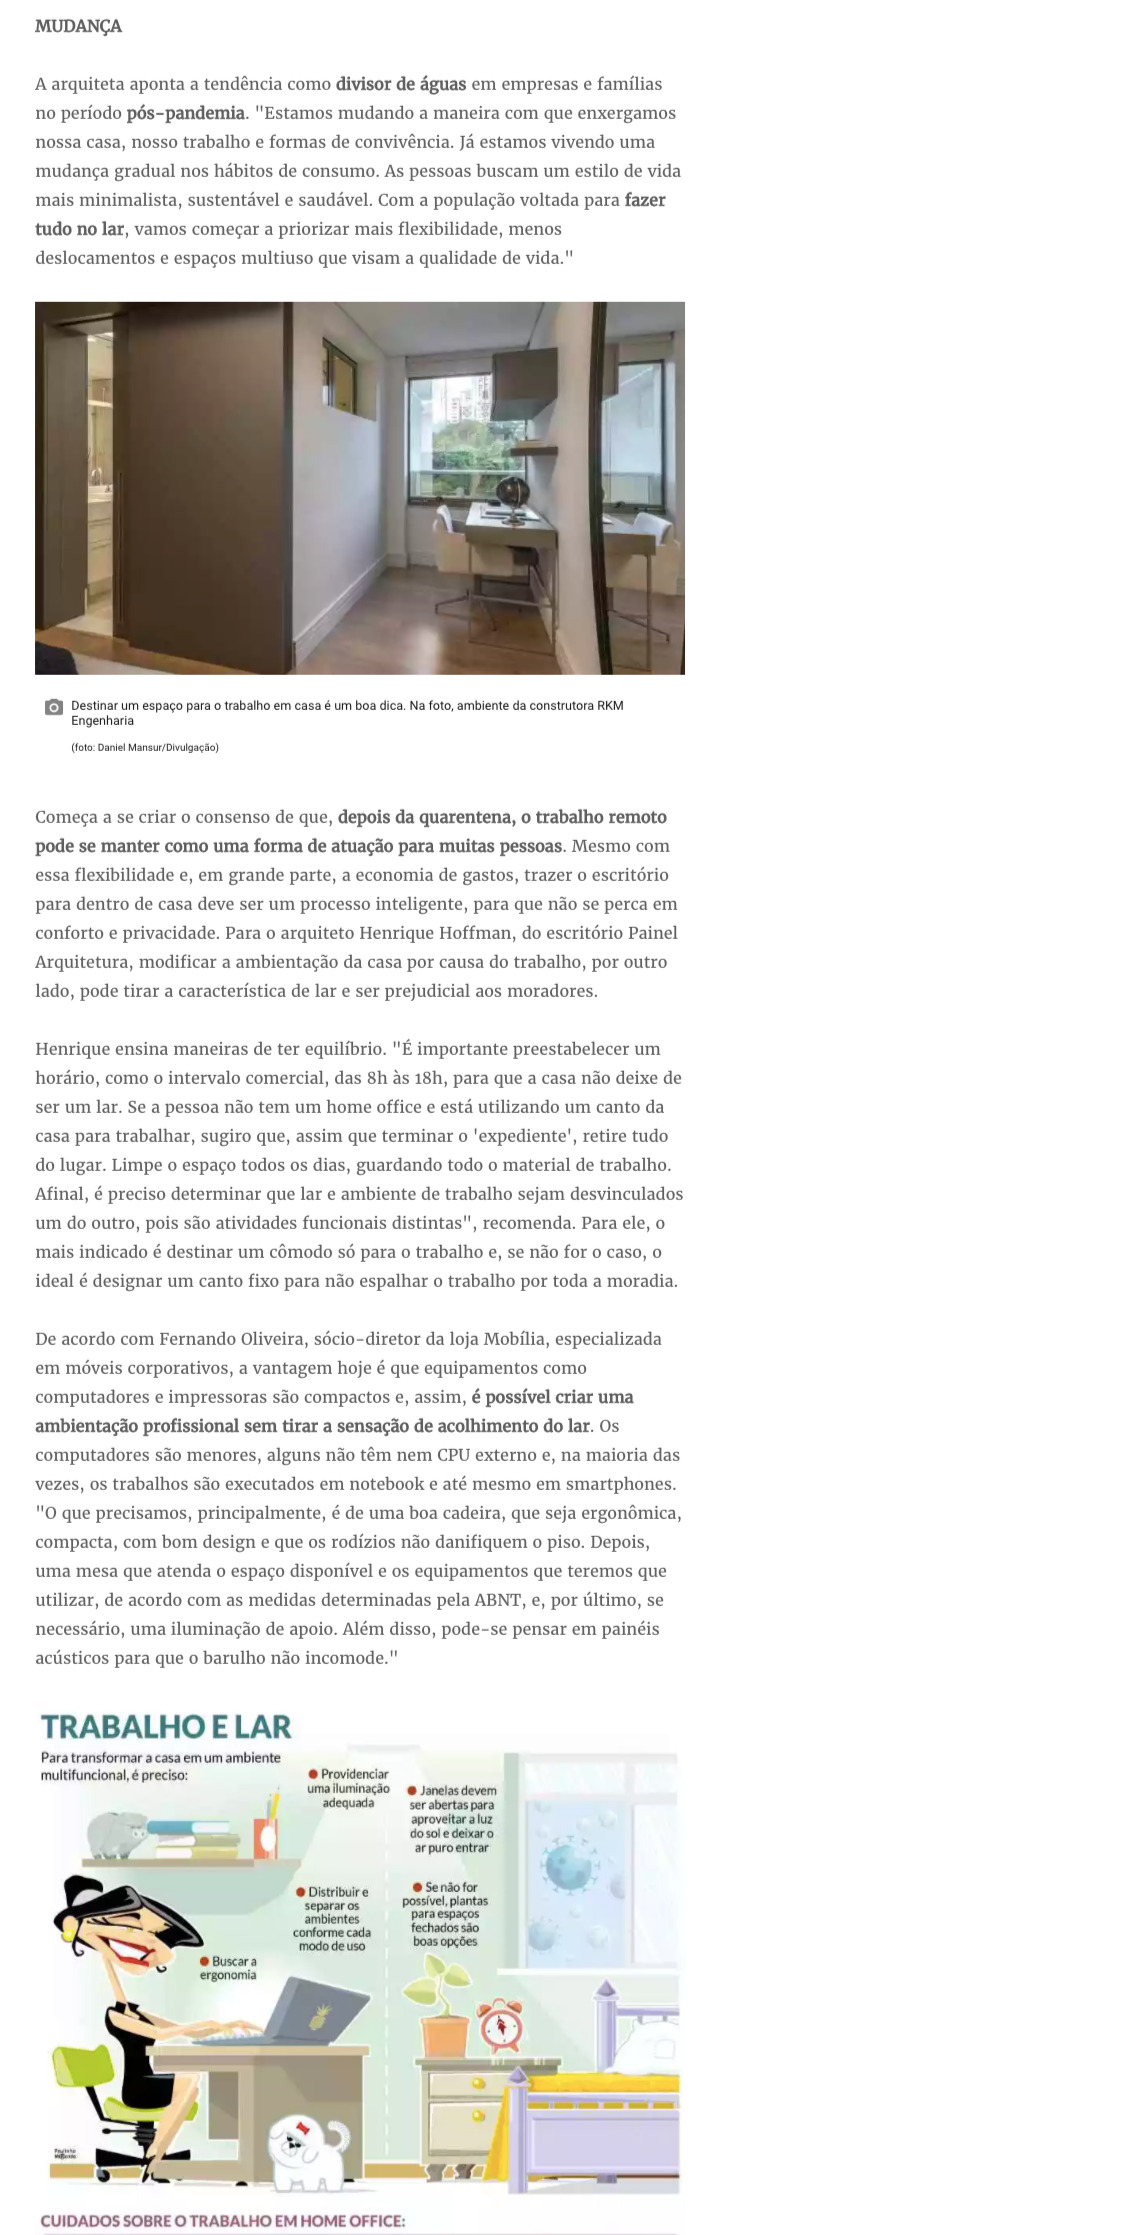 Estado de Minas: "Coronavírus: veja como adaptar o espaço doméstico para o home office sem tirar a característica de lar" - Mídia, Portais - Painel